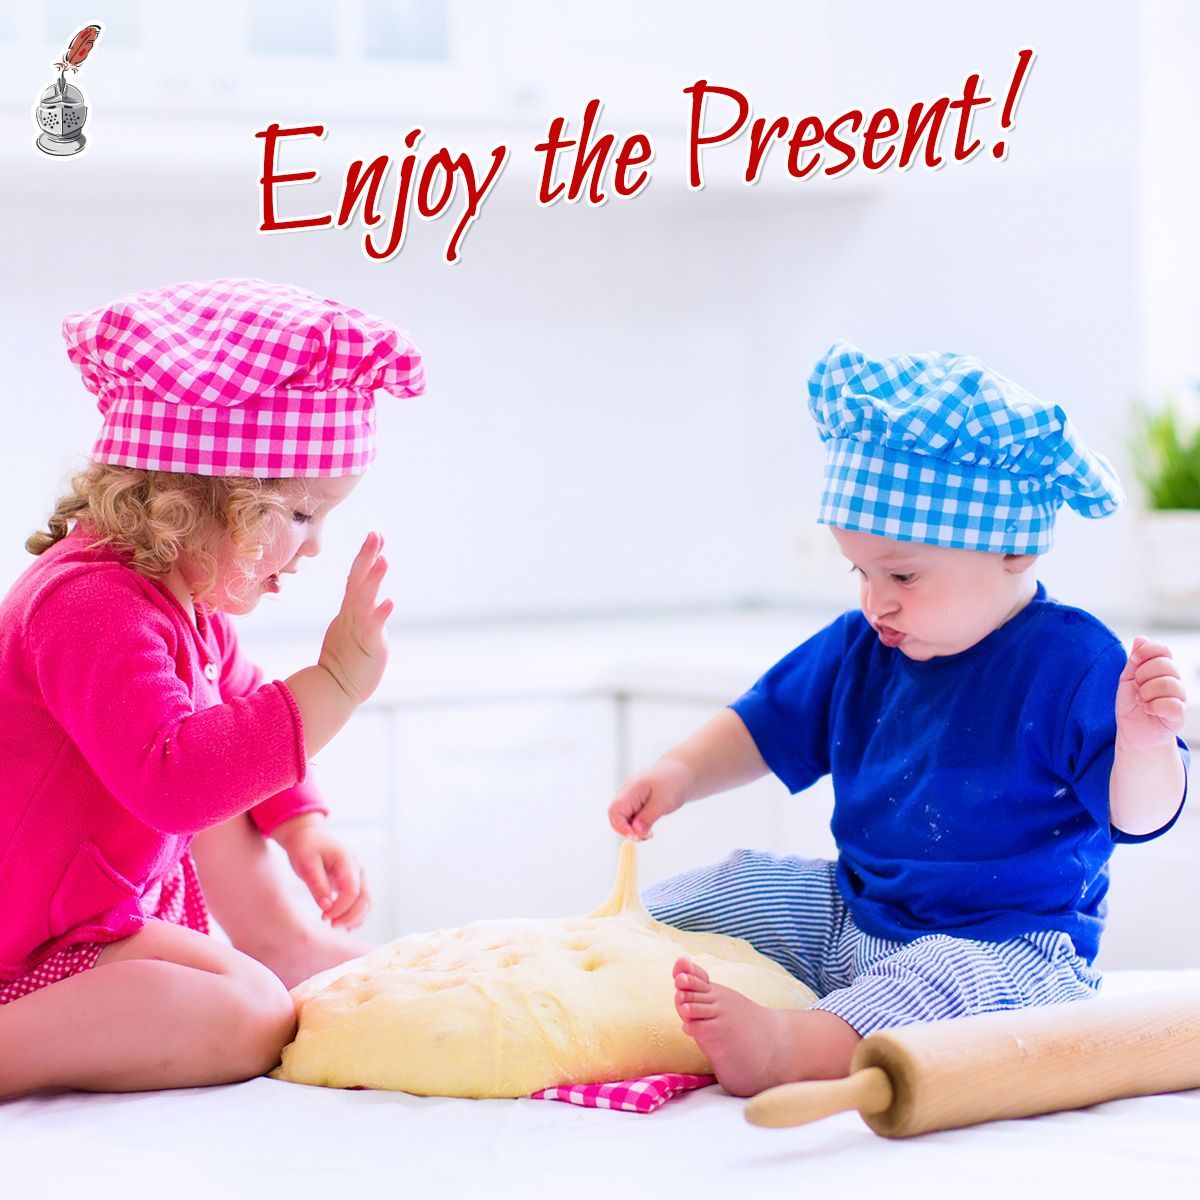 Enjoy the Present!